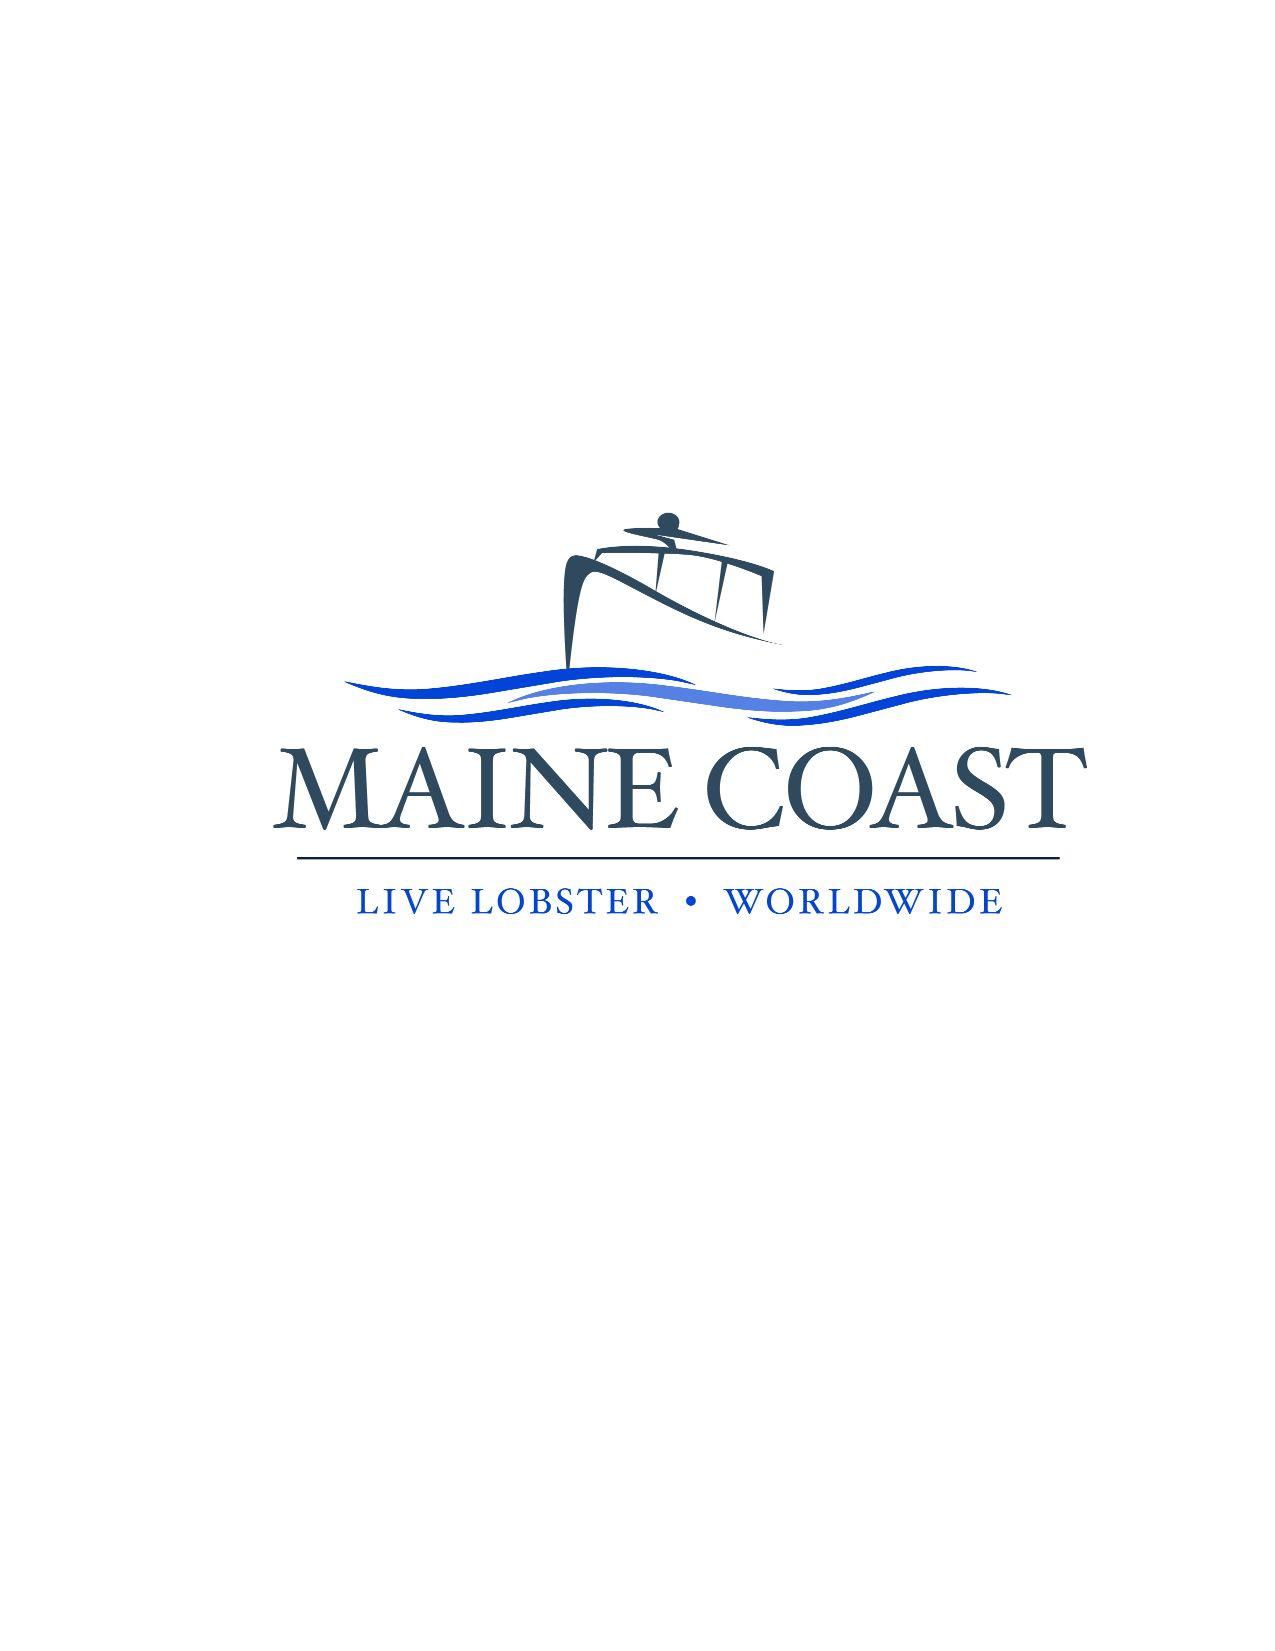 Upgrade Logo - Maine Coast - LOGO - Upgrade - Seafood Expo Asia